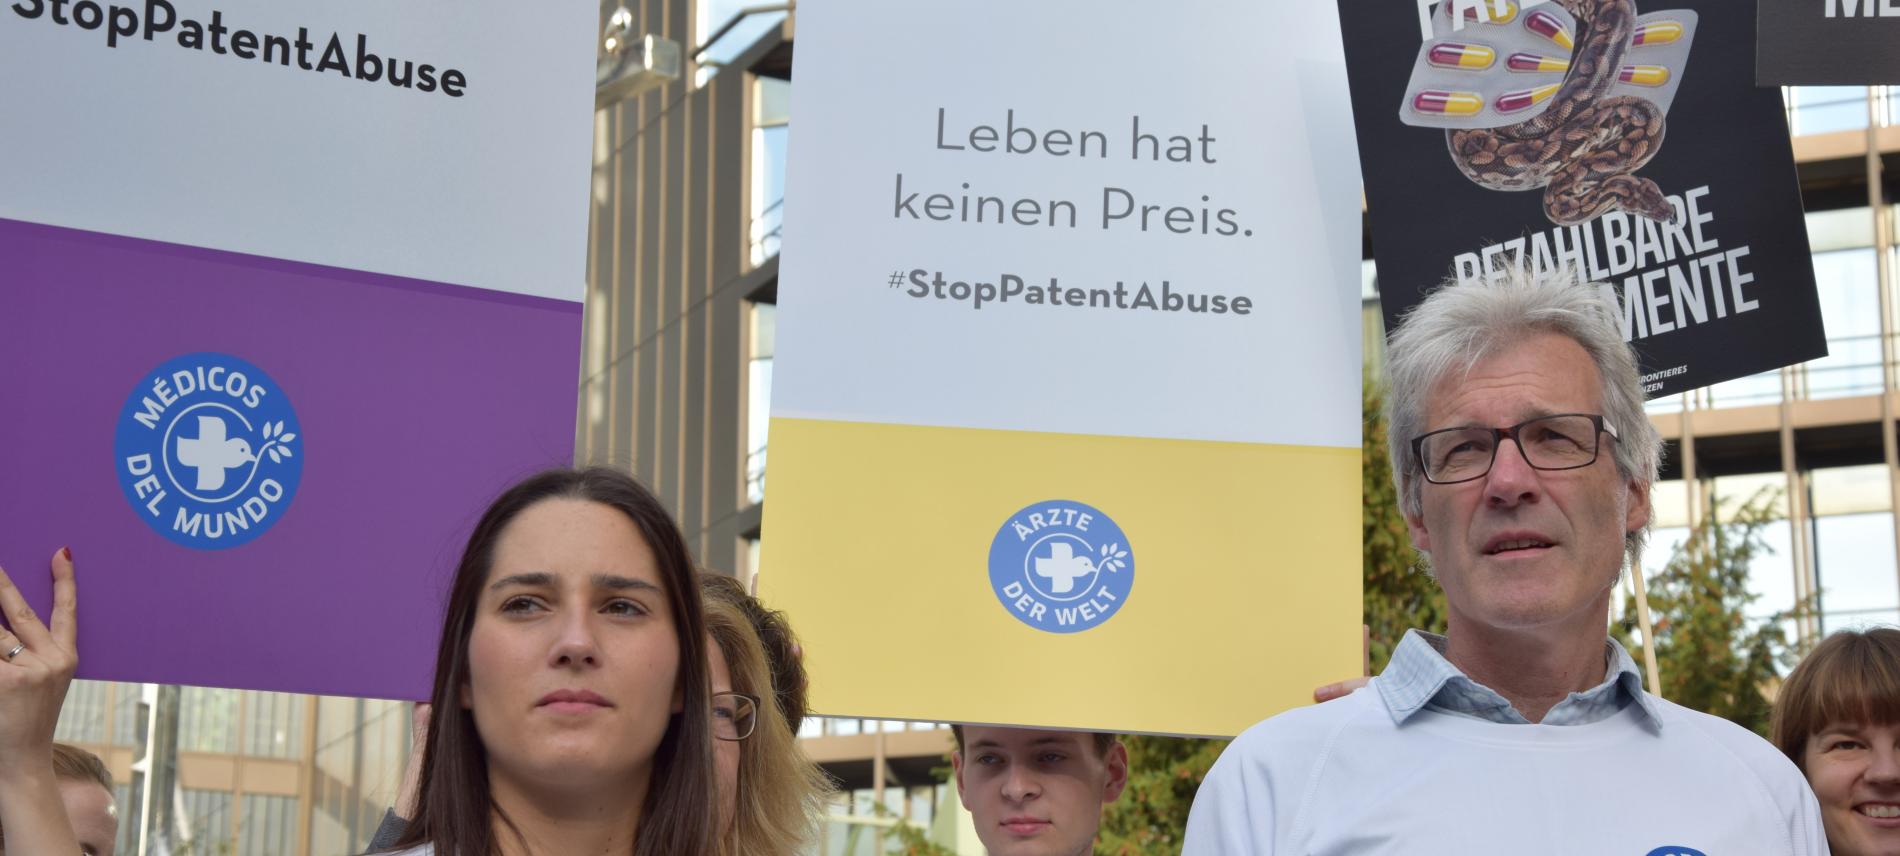 Protest vor dem Europäischen Patentamt. Foto: Lukas Lauber